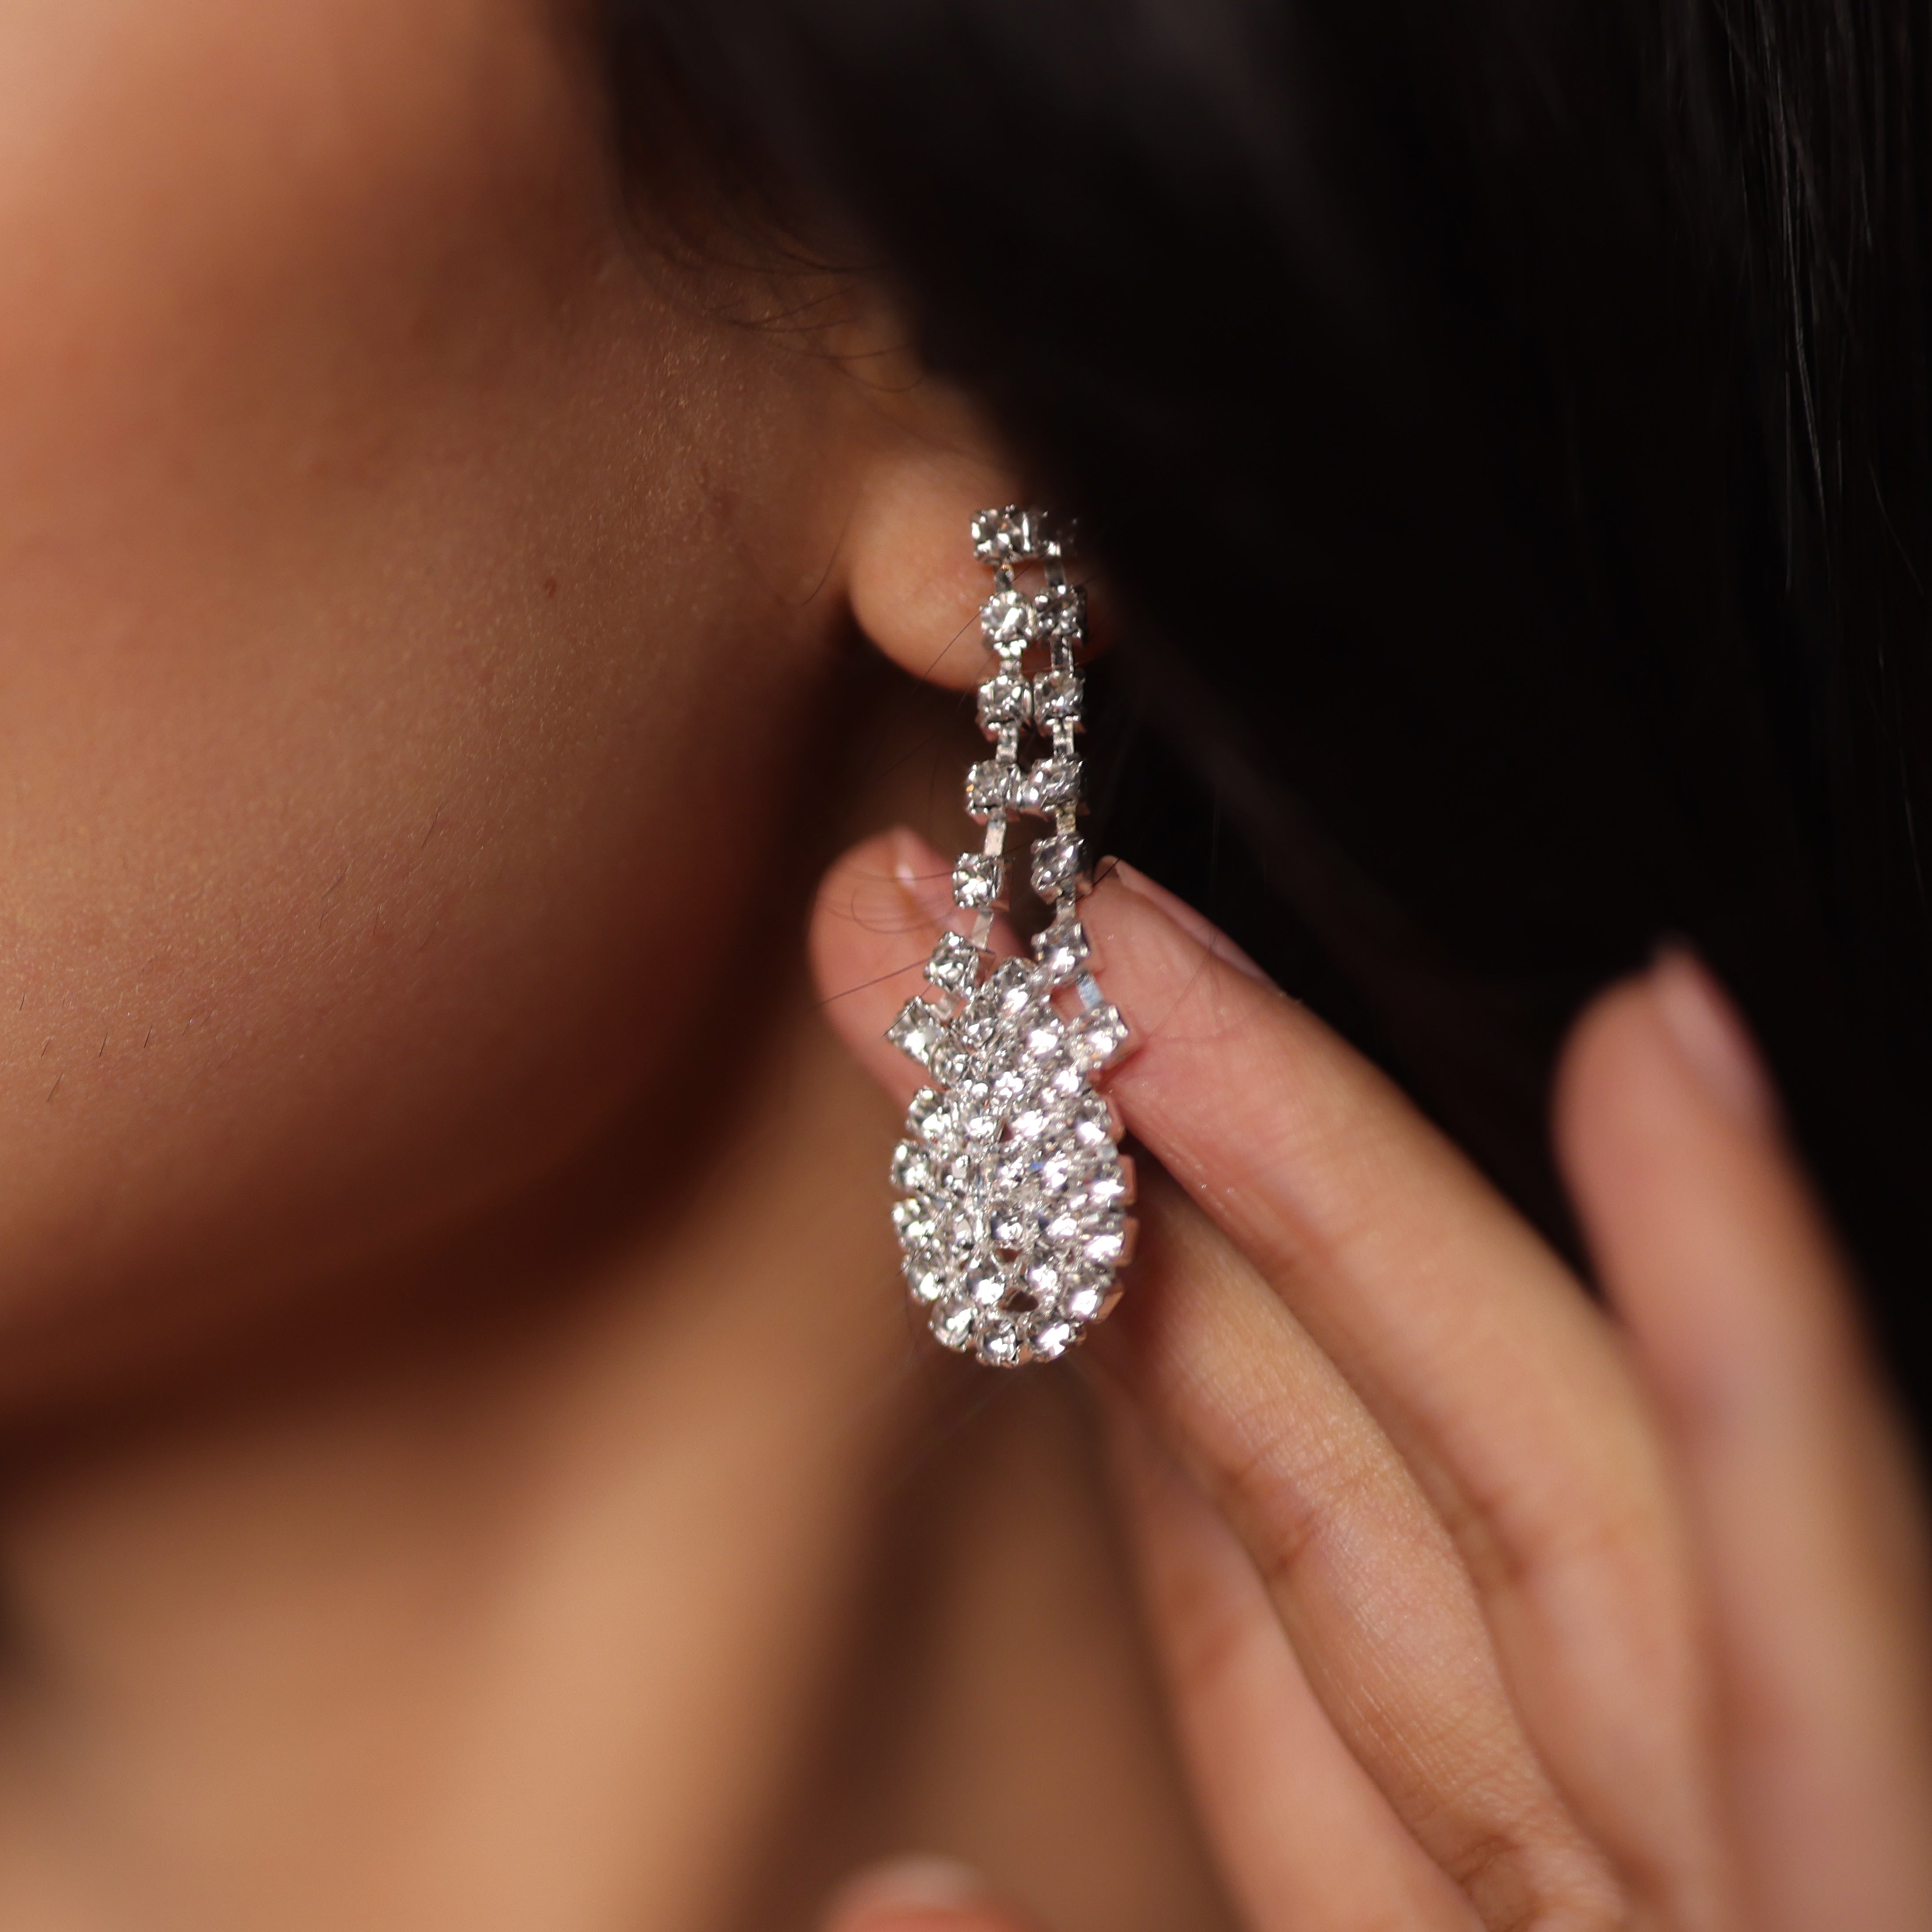 Vintage Drop Earrings - Screw Back - Diamante Rhinestone Dangles | eBay